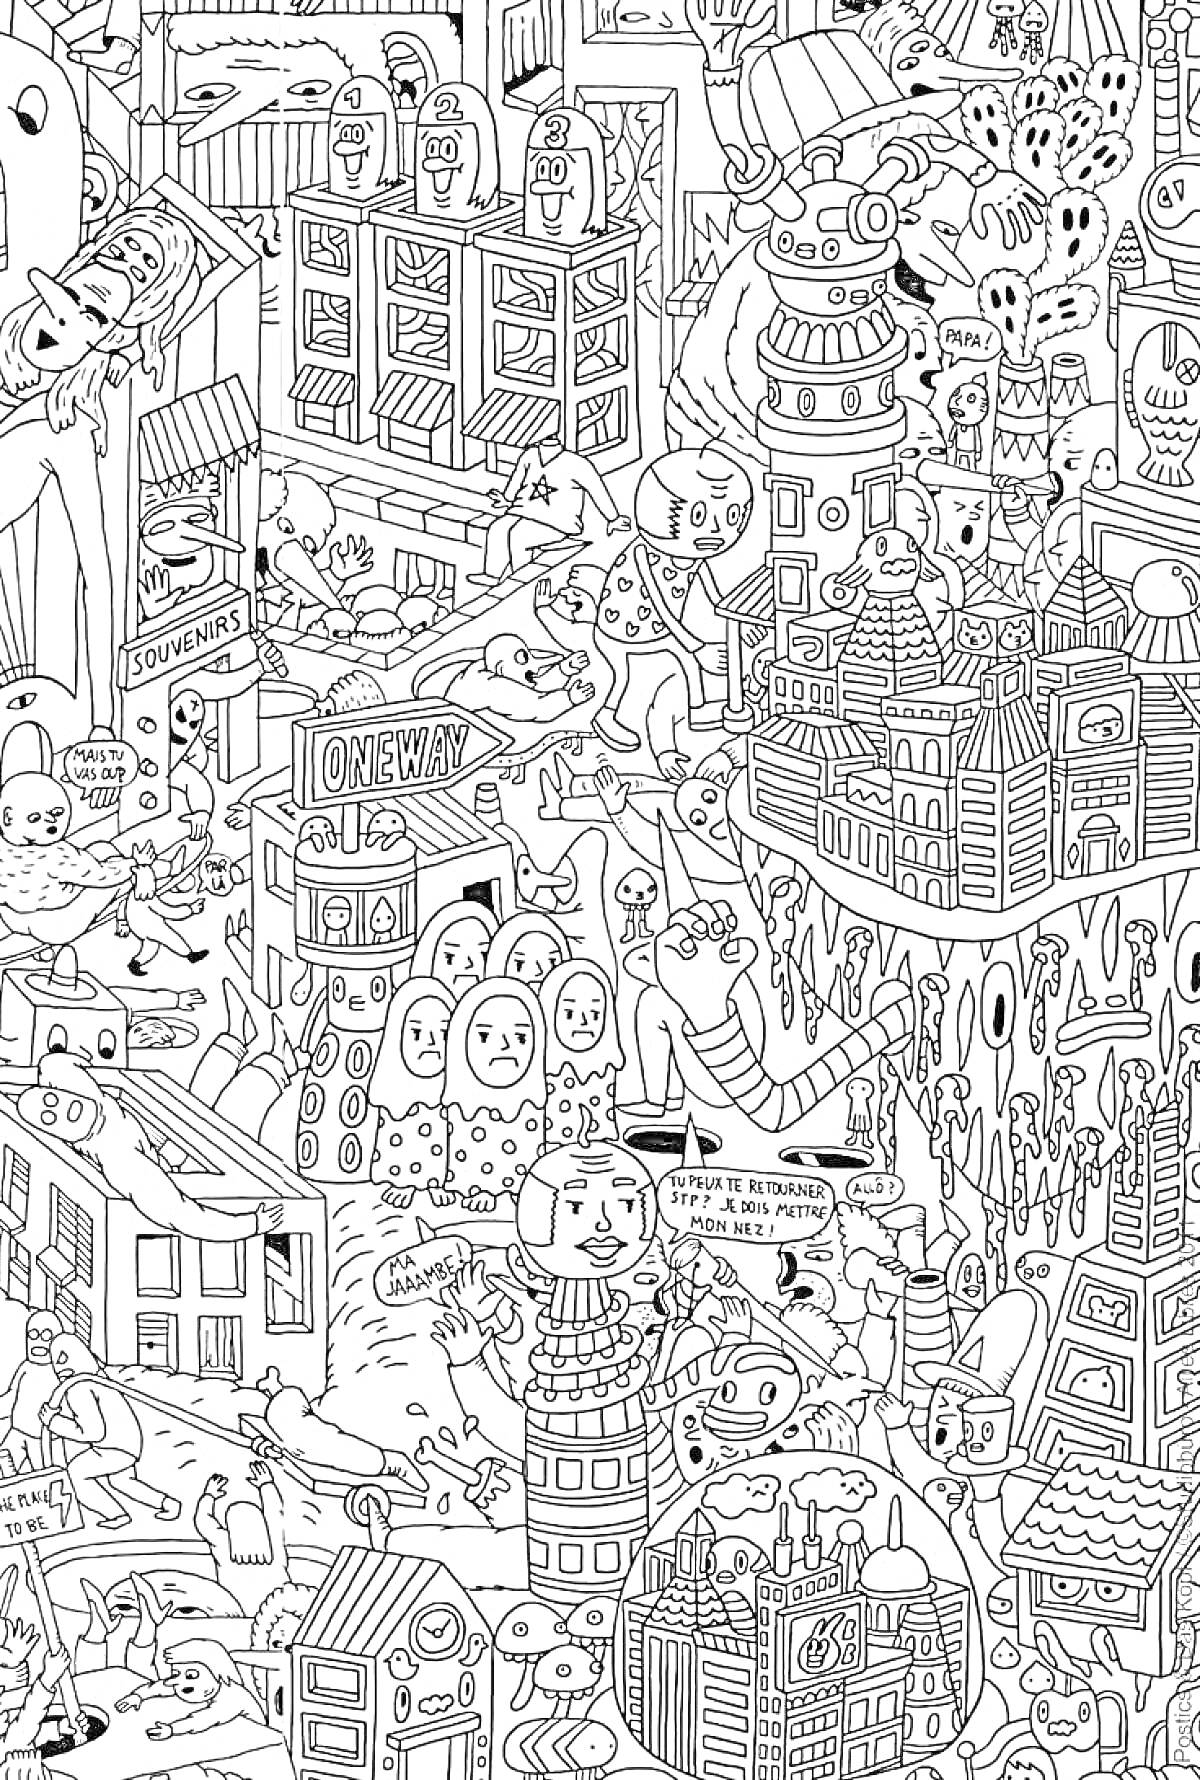 Раскраска Города с необычными персонажами, здания, надписи, и множество деталей